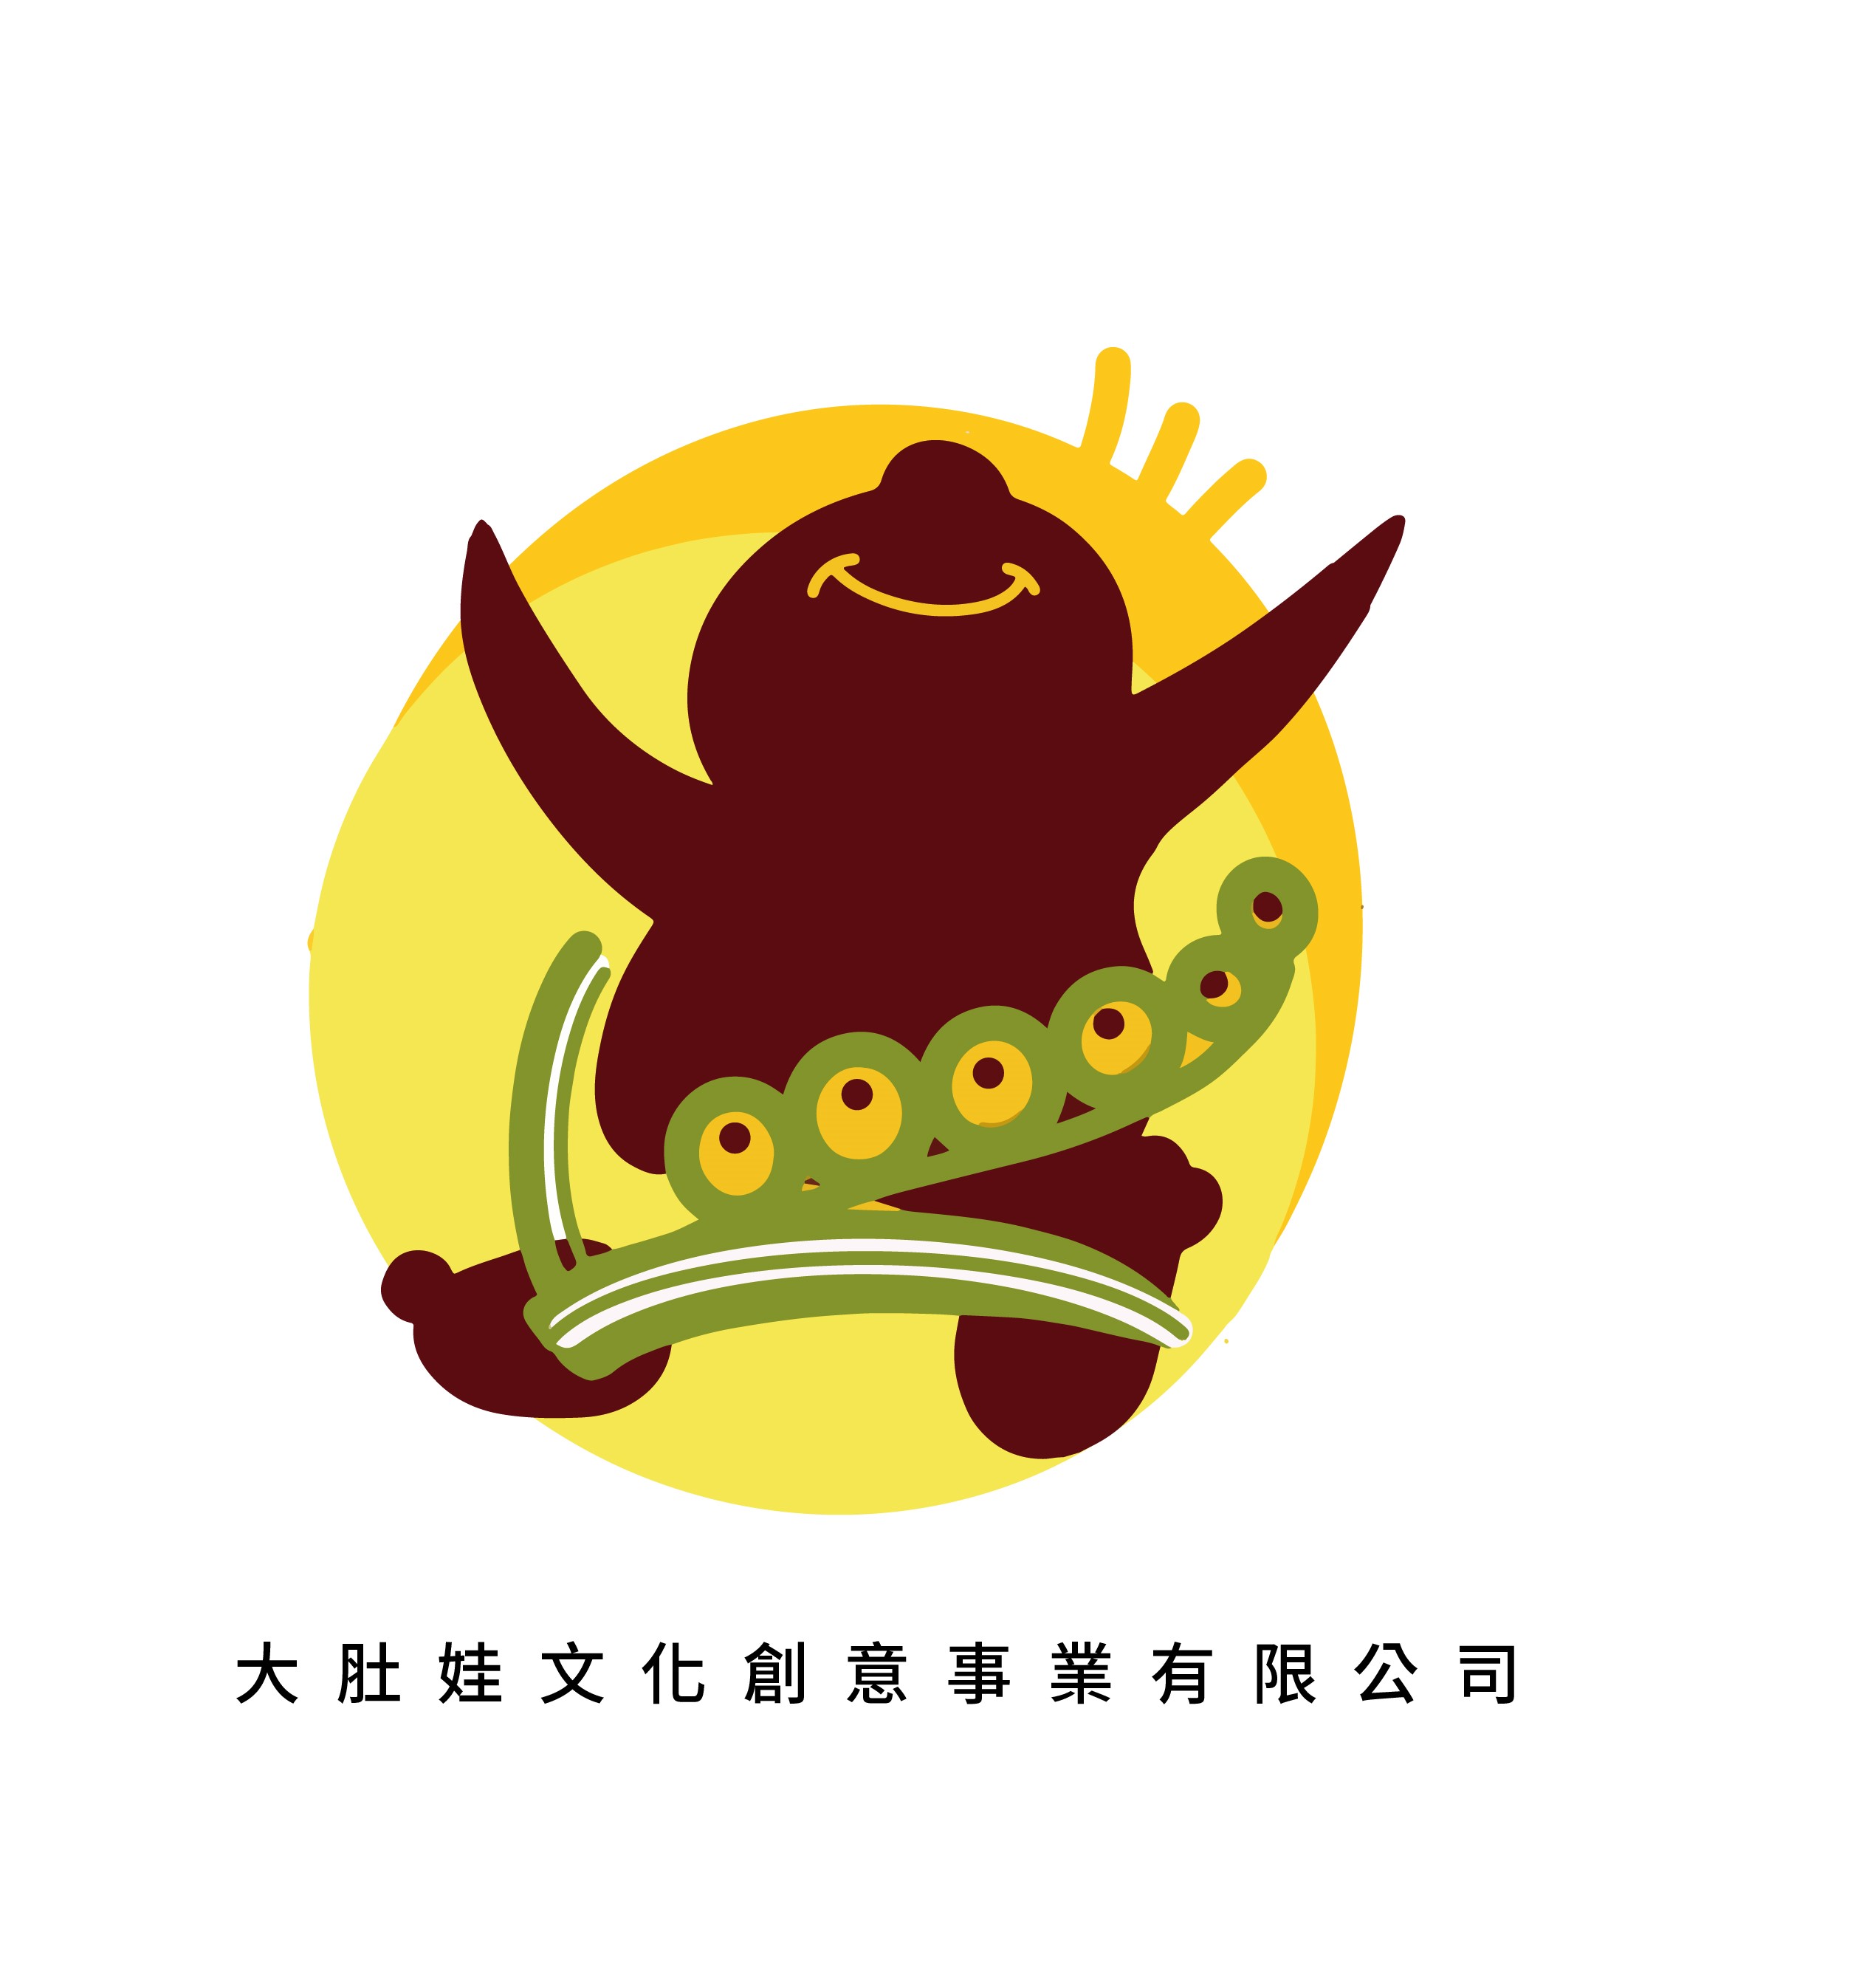 大肚娃文化創意事業有限公司 logo